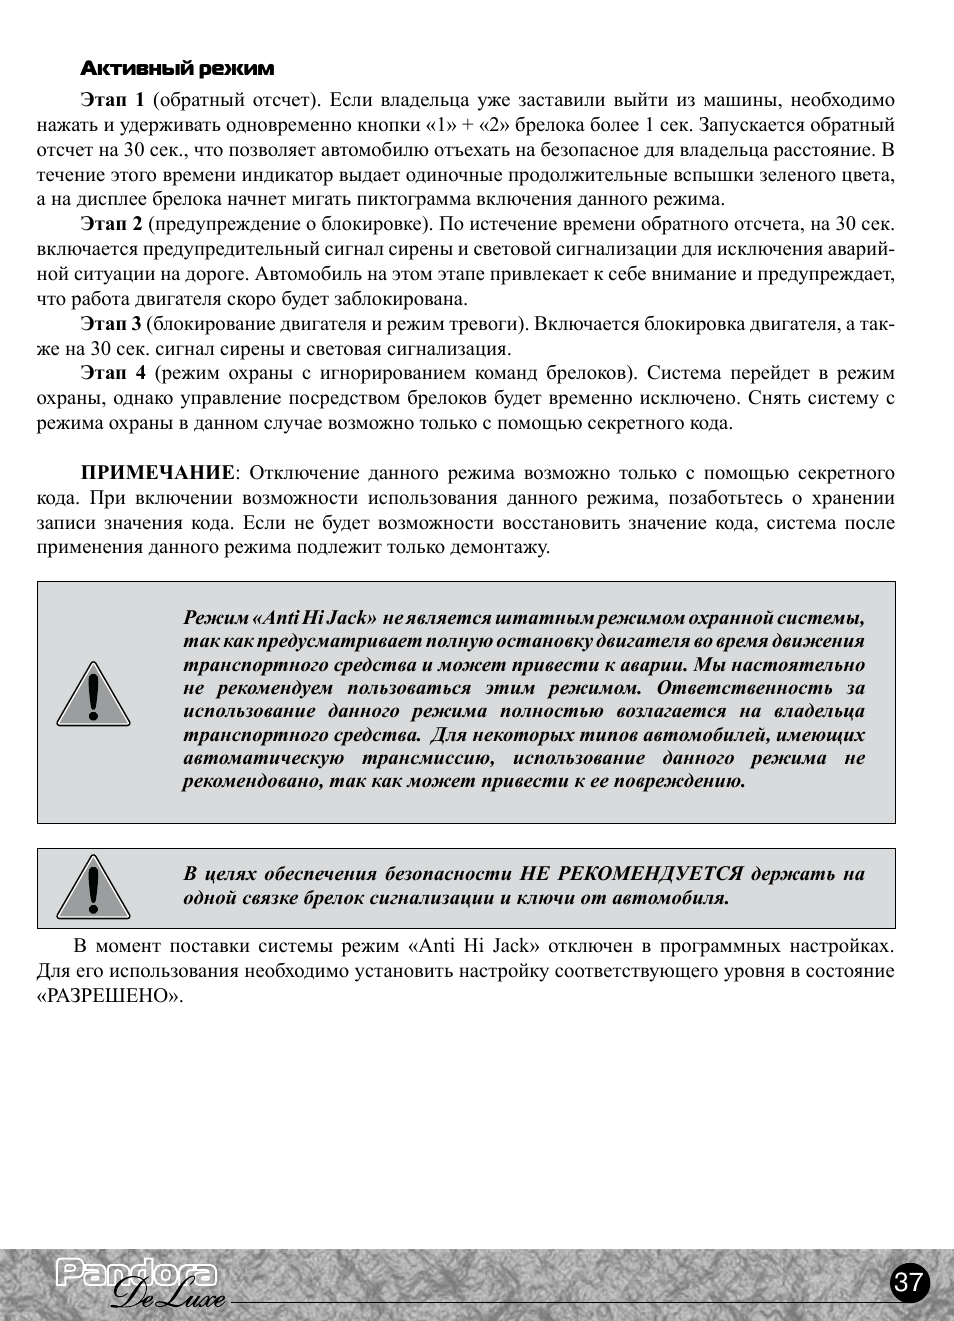 Инструкция и руководство для pandora deluxe 2000 на русском